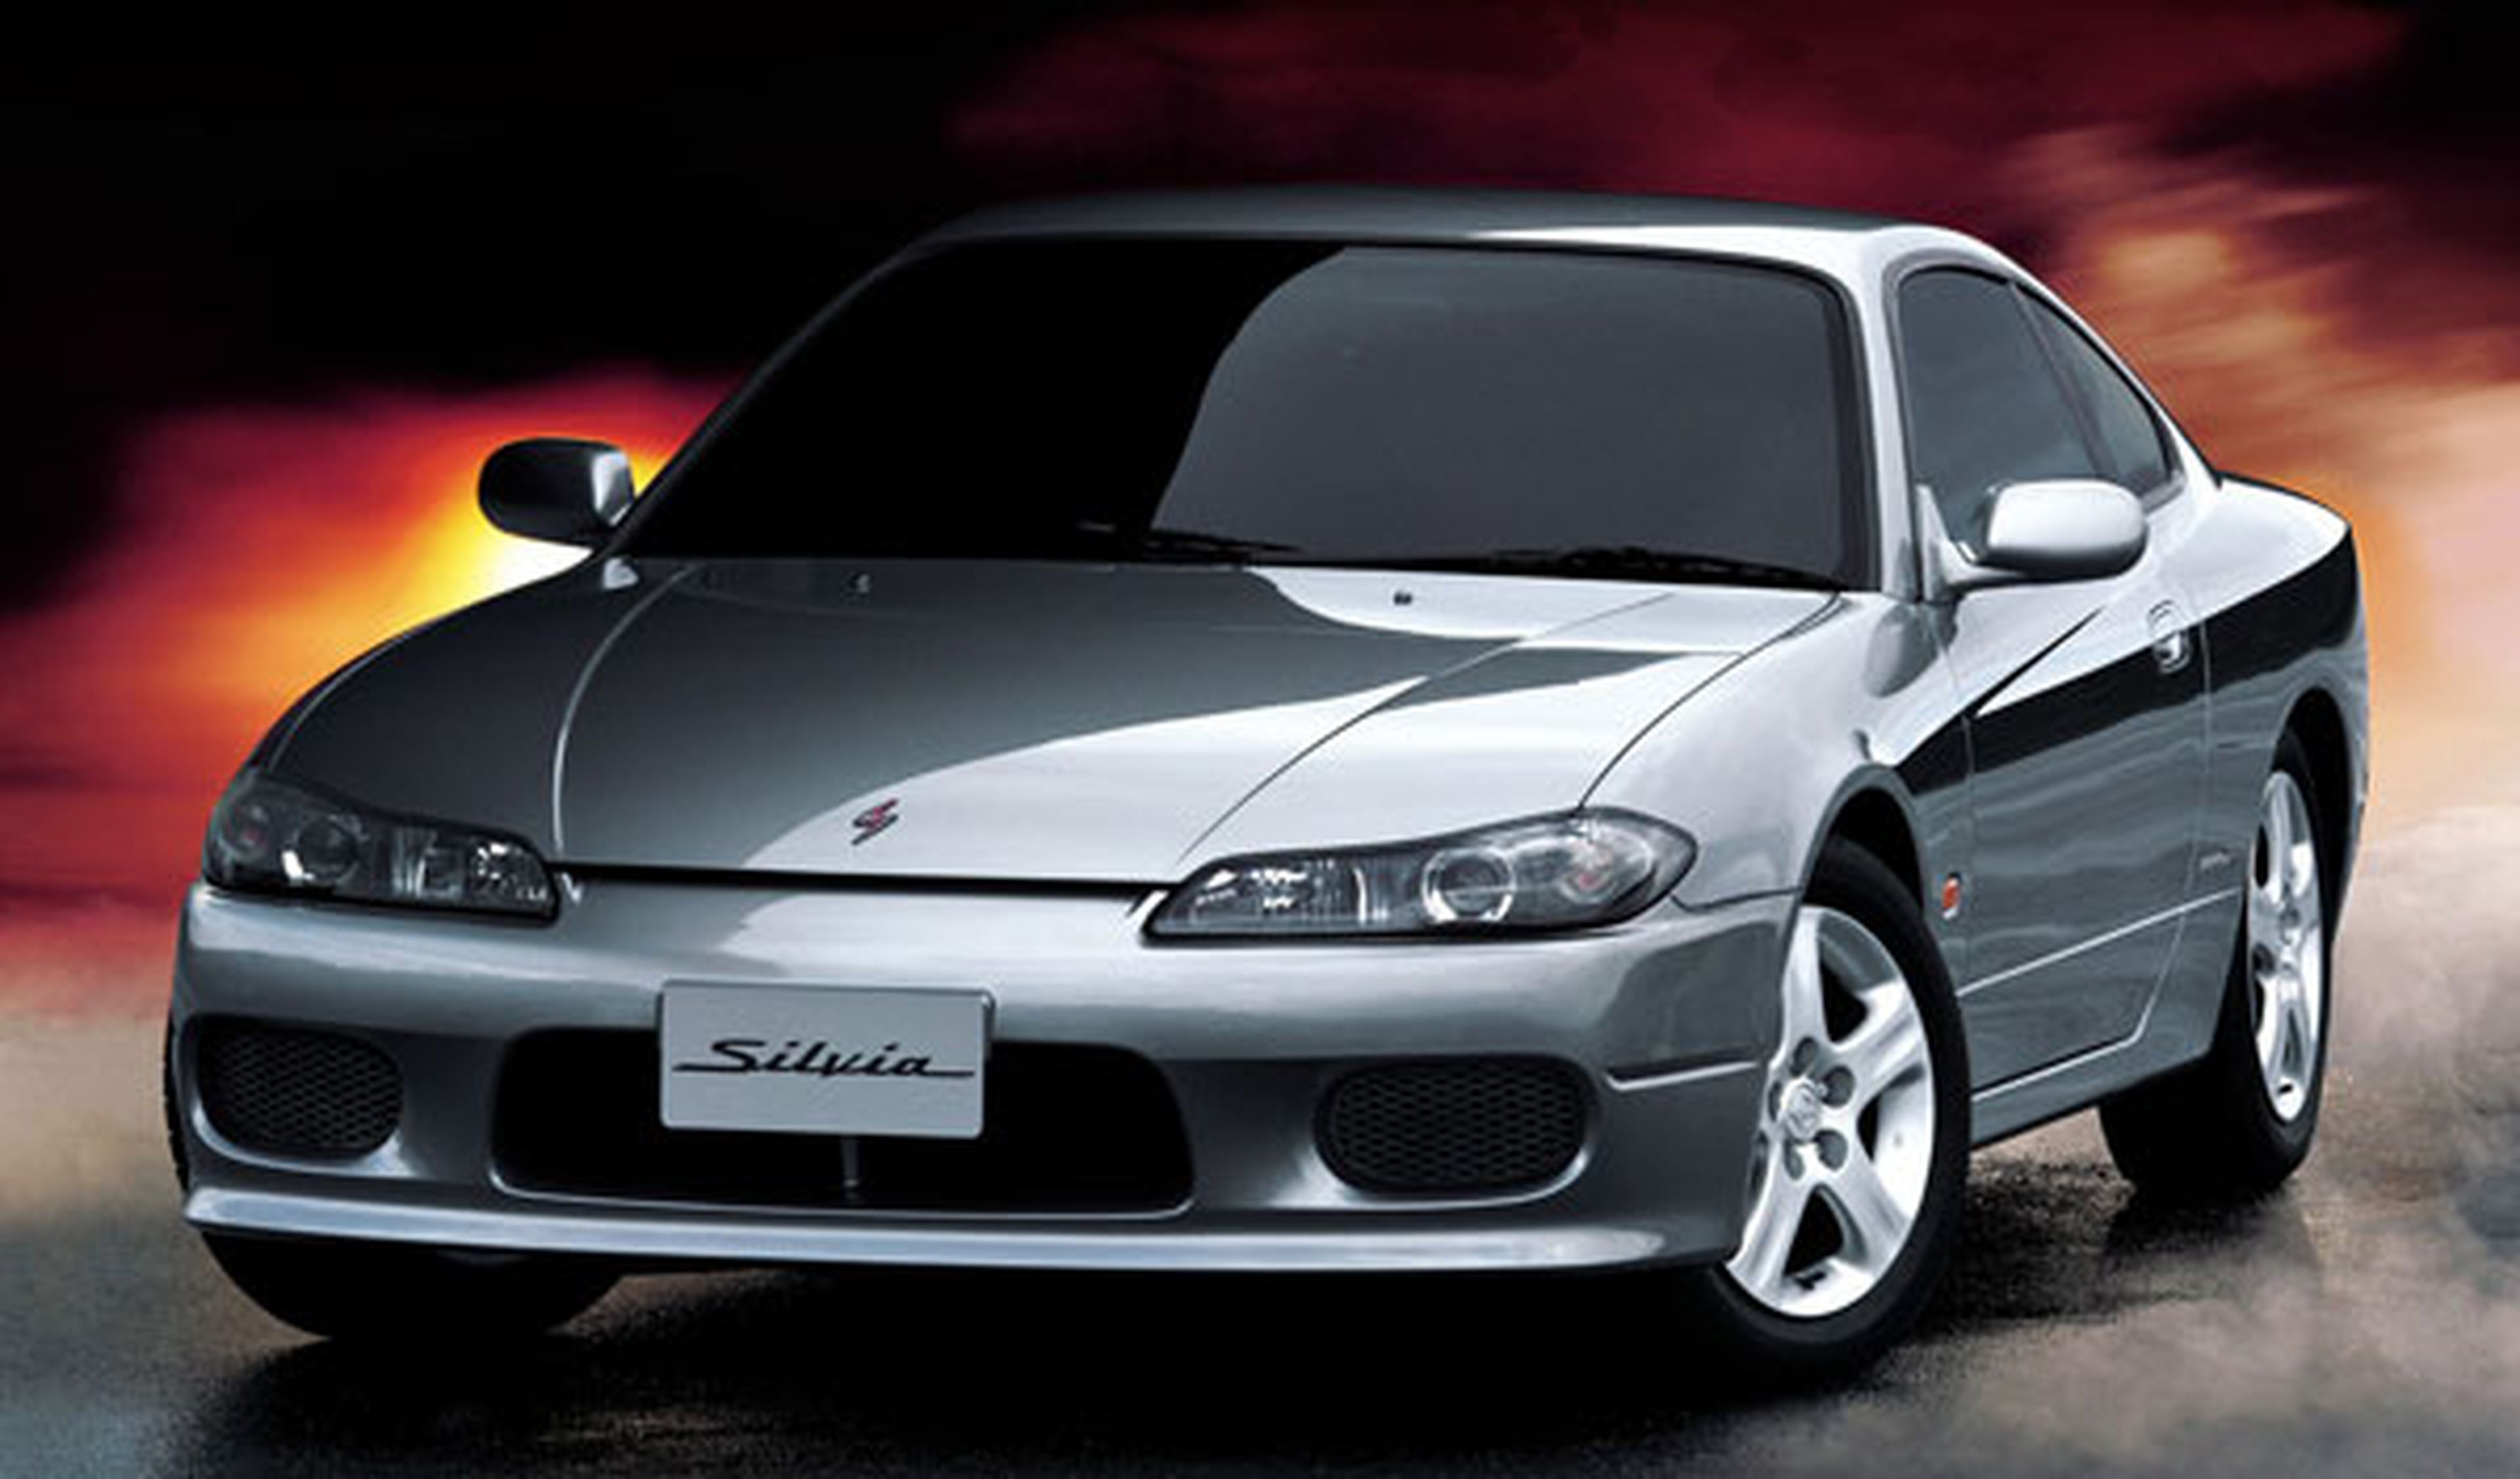 20 años de cárcel por importar un Nissan Silvia en EEUU